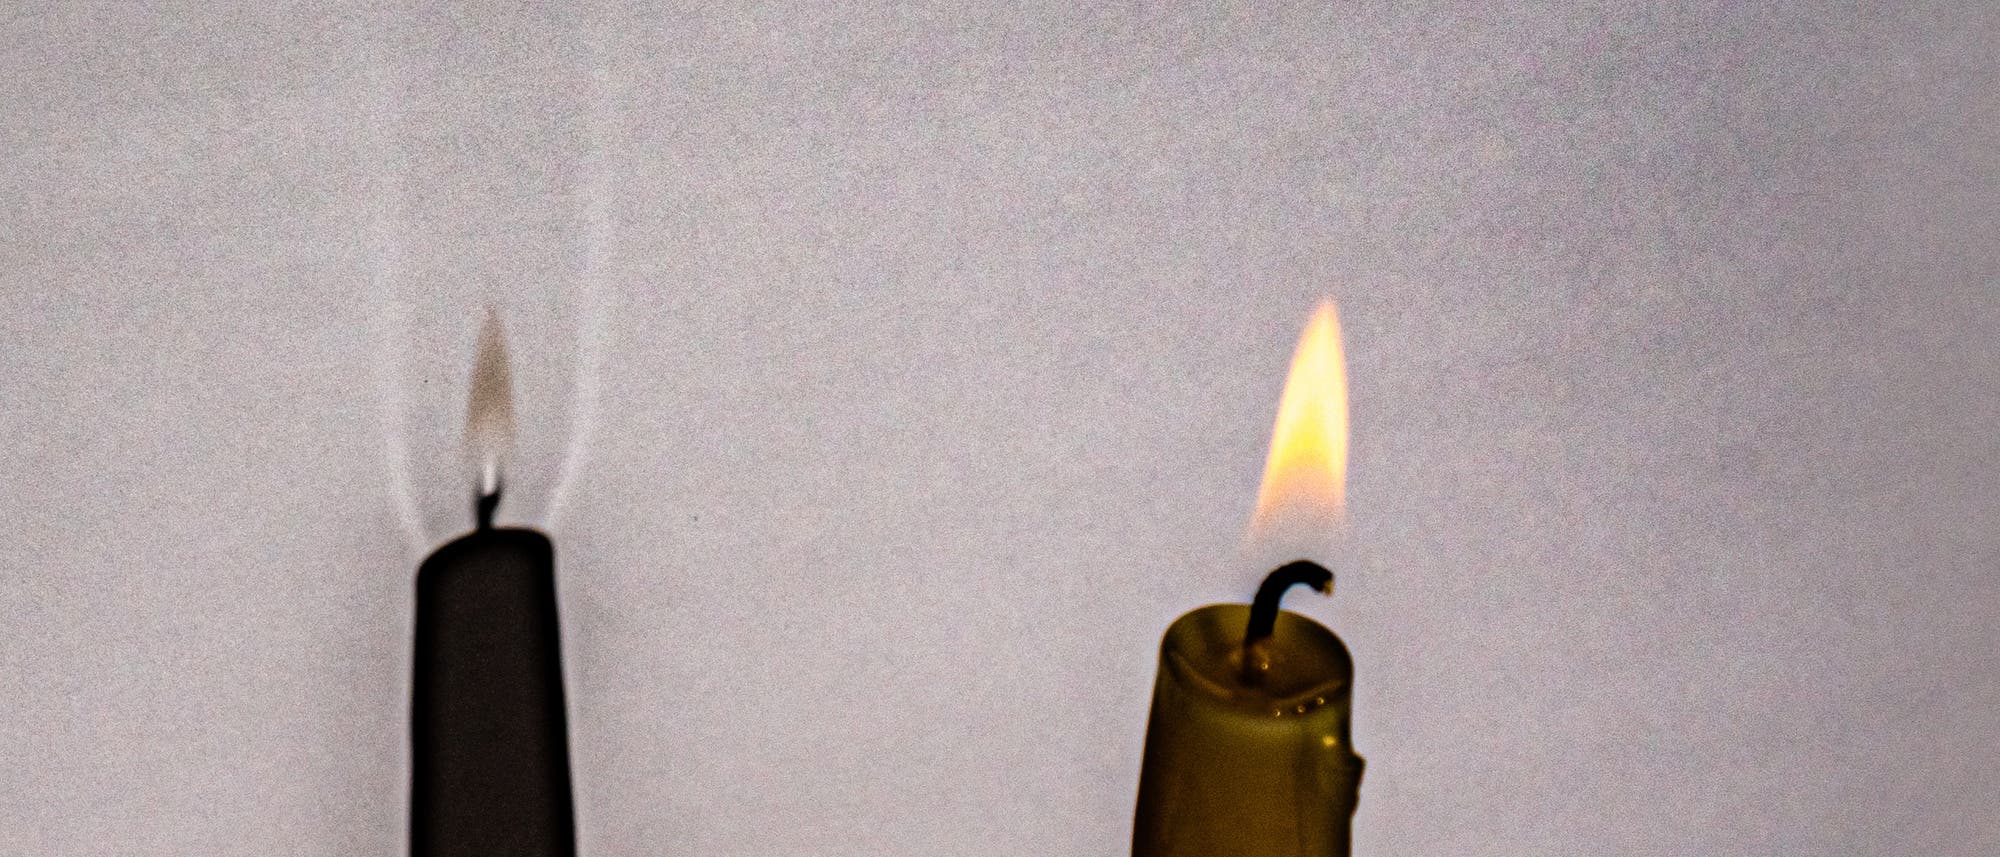 Eine brennende Kerze wirft einen Schatten auf eine weiße Fläche. Der Schatten der Leuchtzone ist leicht bräunlich, während im Kern auf Höhe des Dochts sowie seitlich der Abgasfahne helle Bereiche zu erkennen sind.